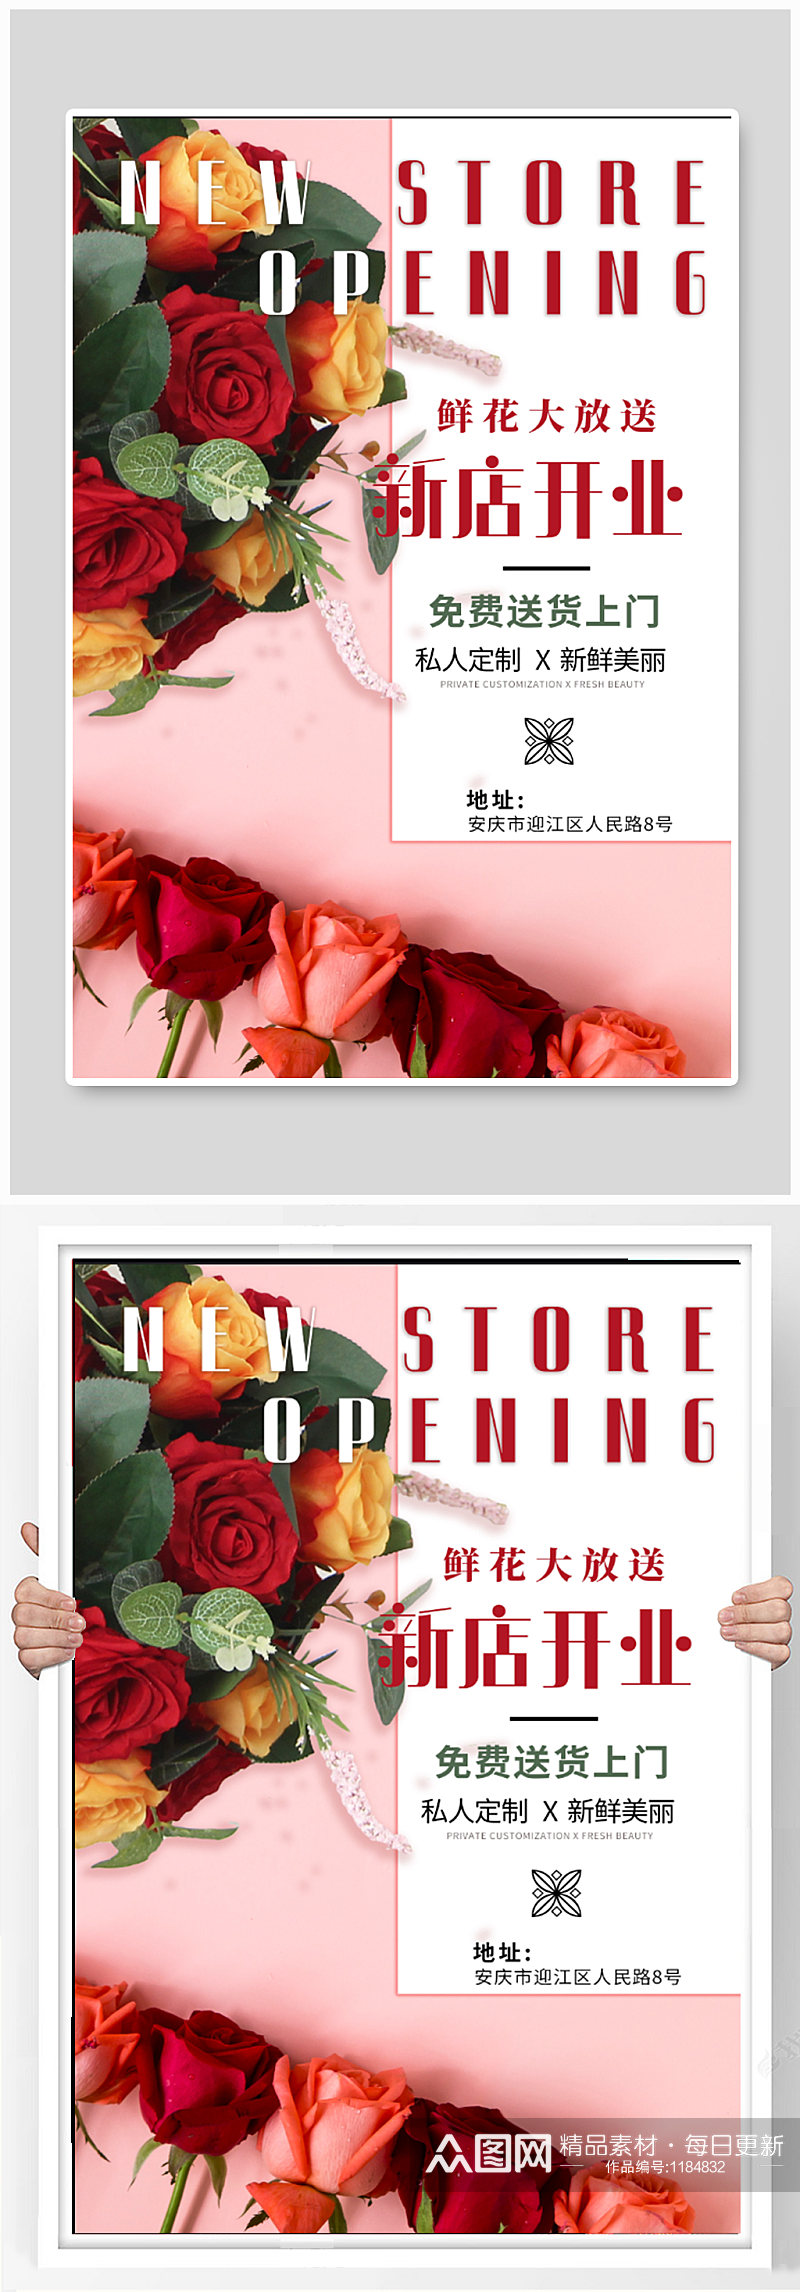 鲜花商店新店开业宣传海报素材